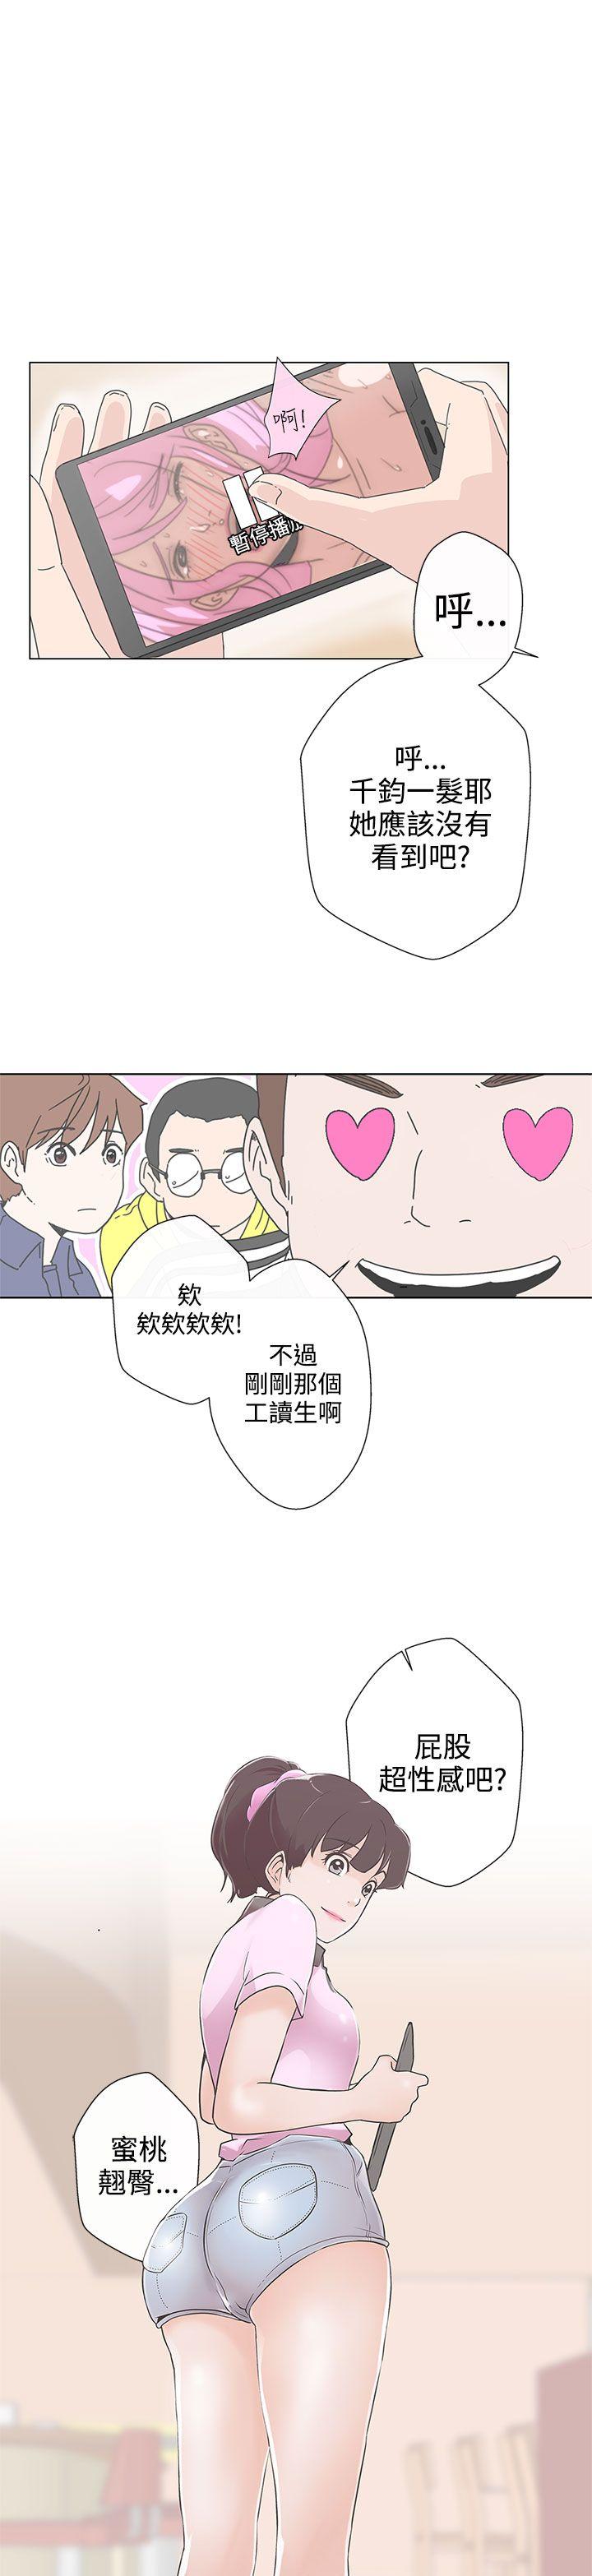 韩国污漫画 LOVE 愛的導航G 第1话 33